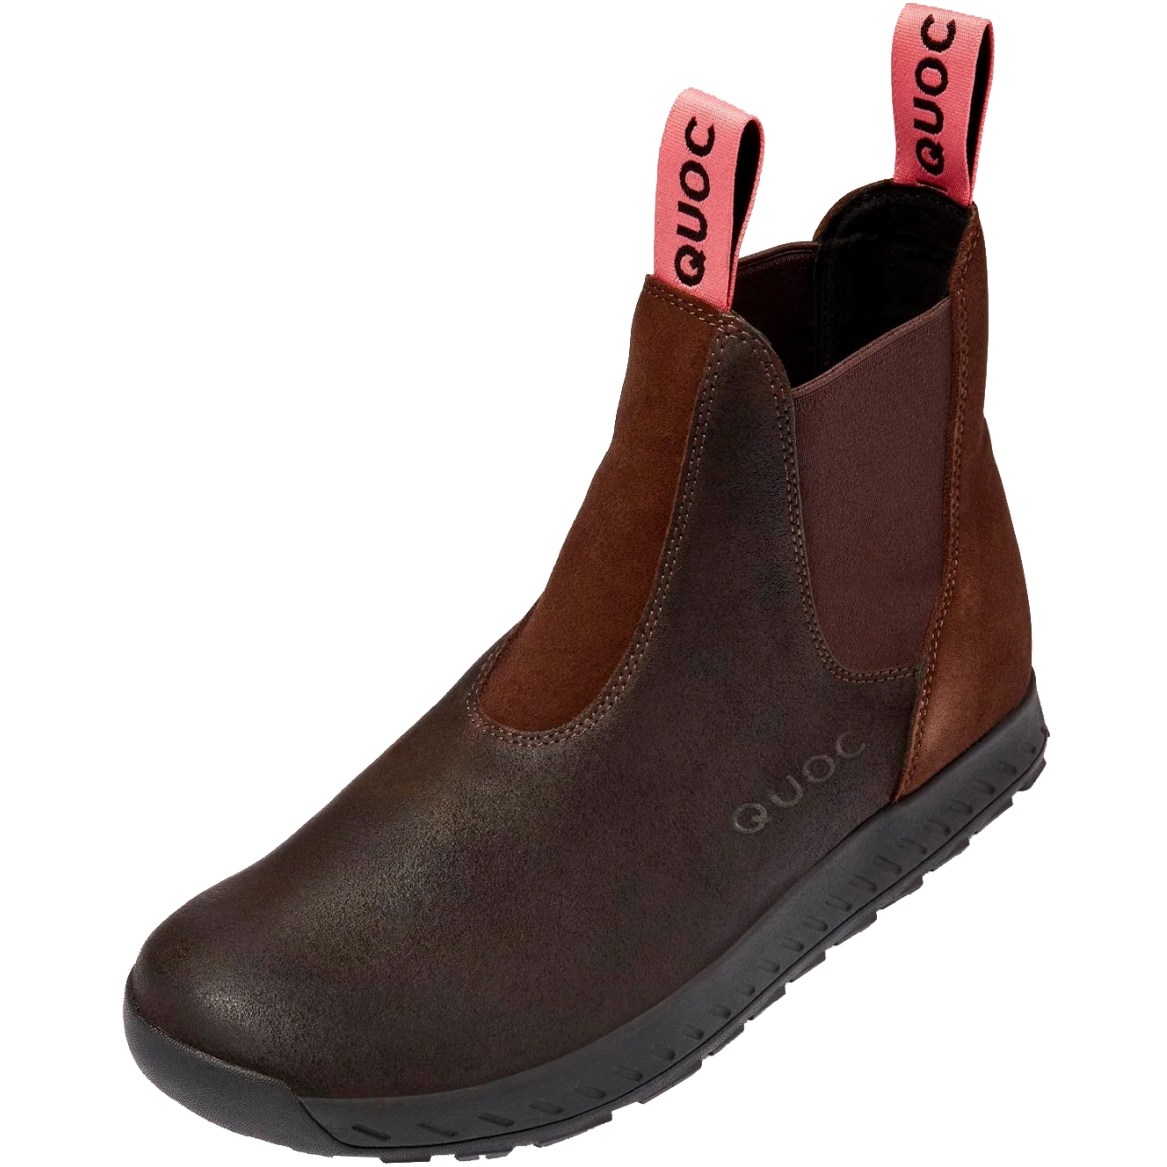 Produktbild von QUOC Chelsea Boot City Schuhe - braun